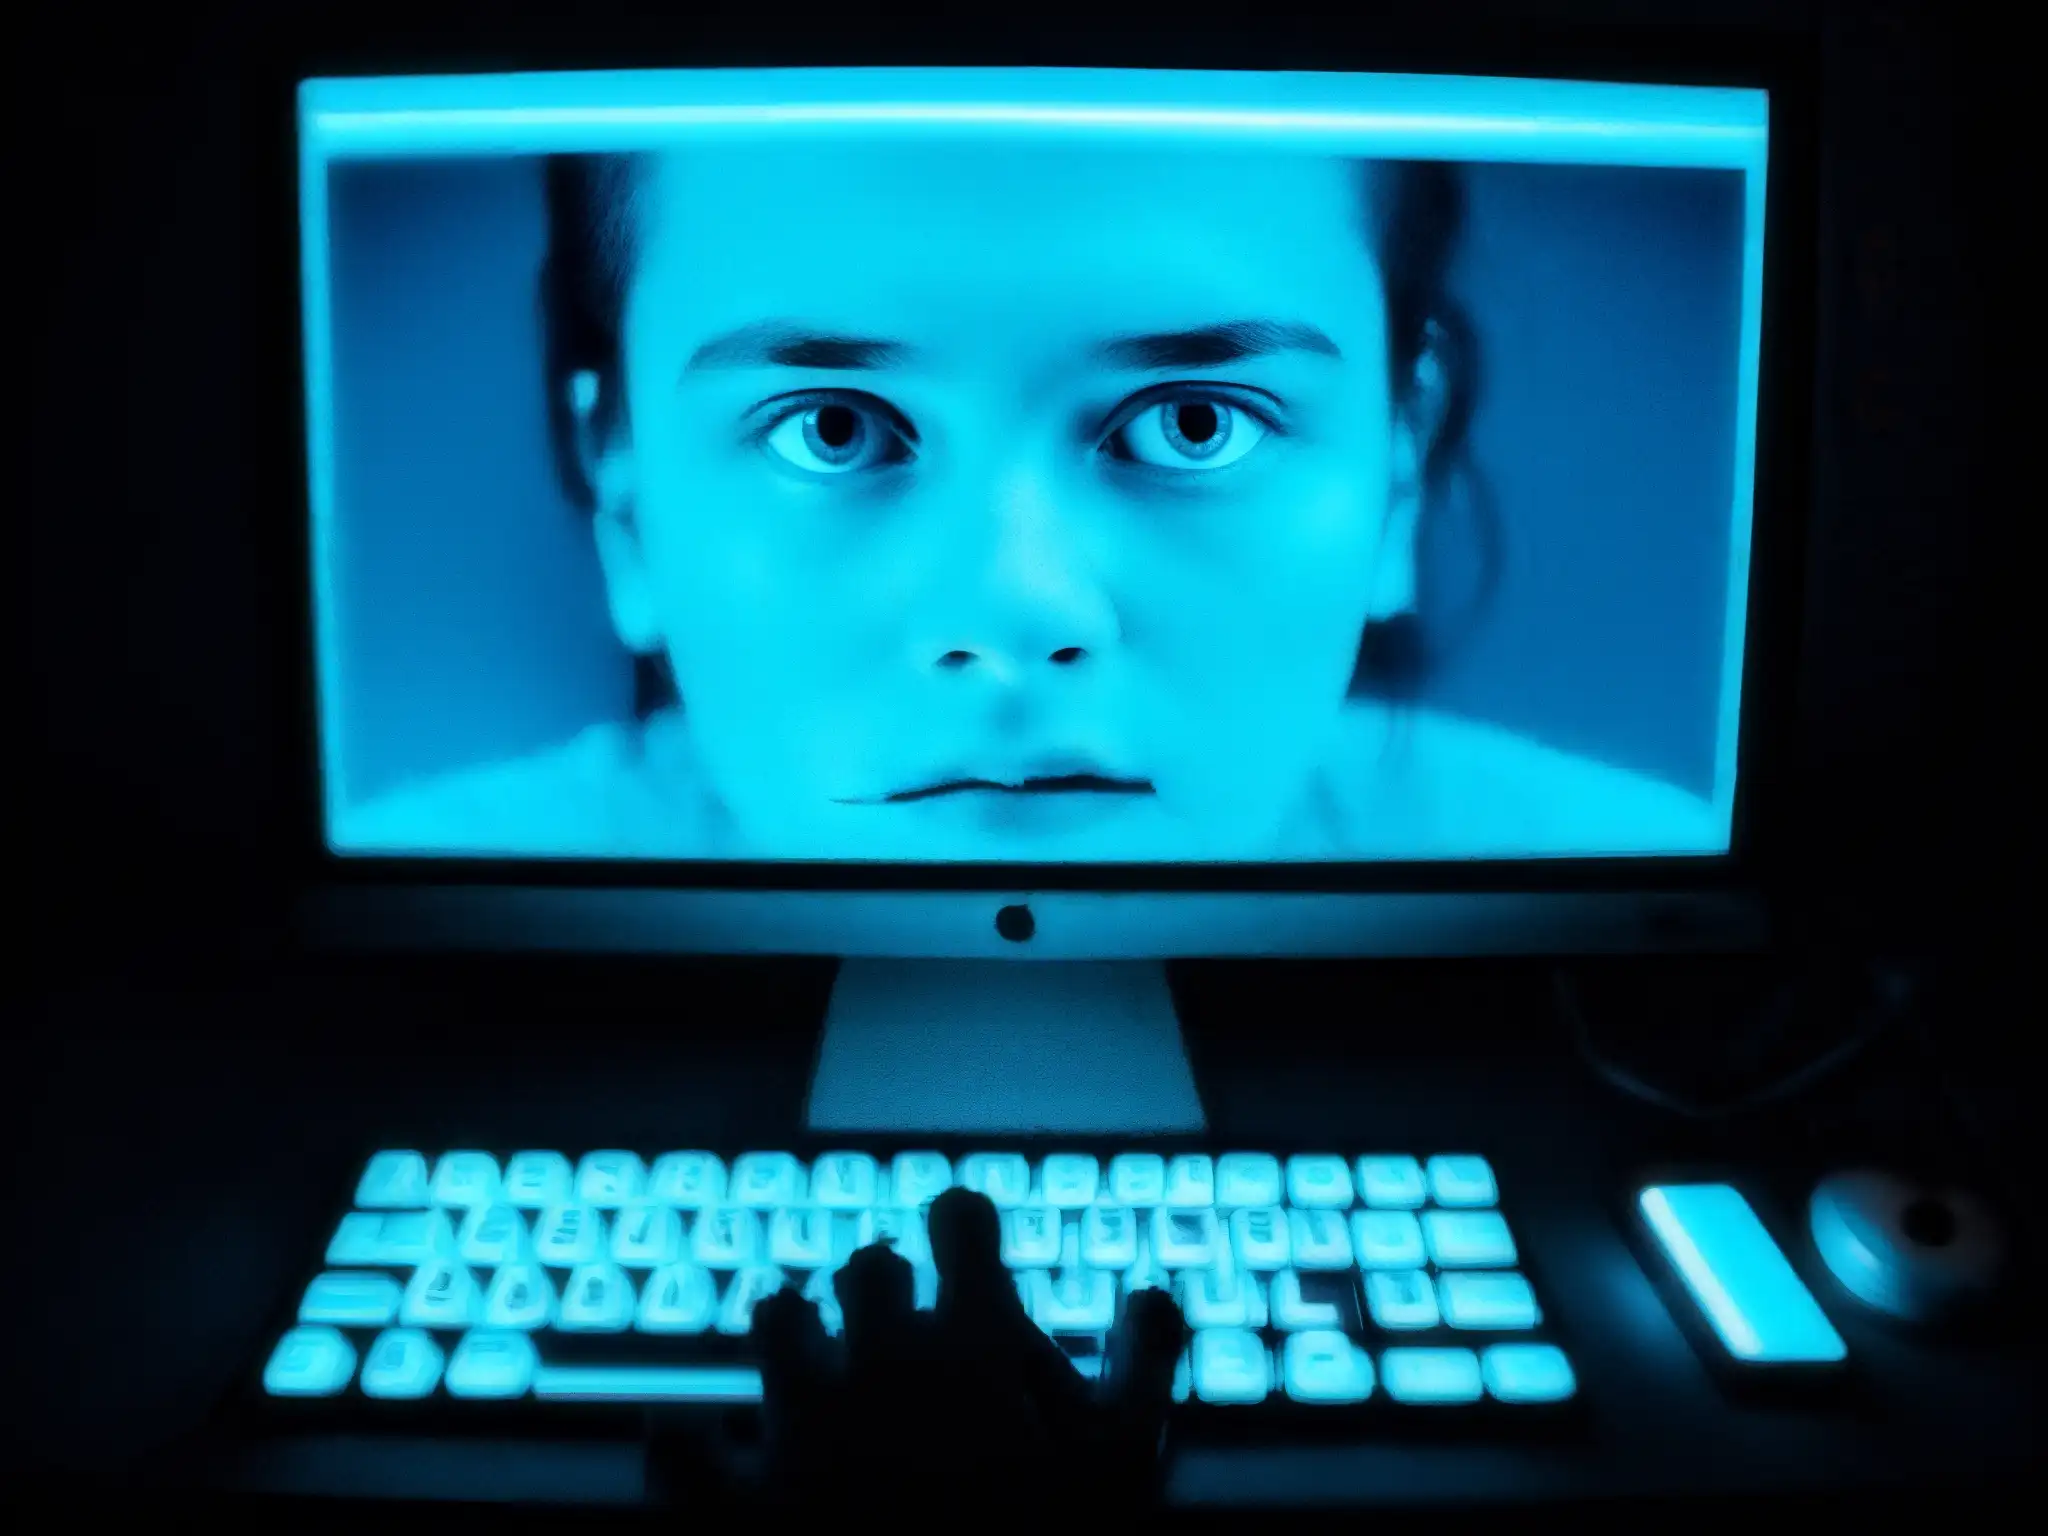 Un joven mira aterrado un mensaje criptico en una pantalla de computadora iluminada con luz azul, reflejando el impacto del Blue Whale Challenge